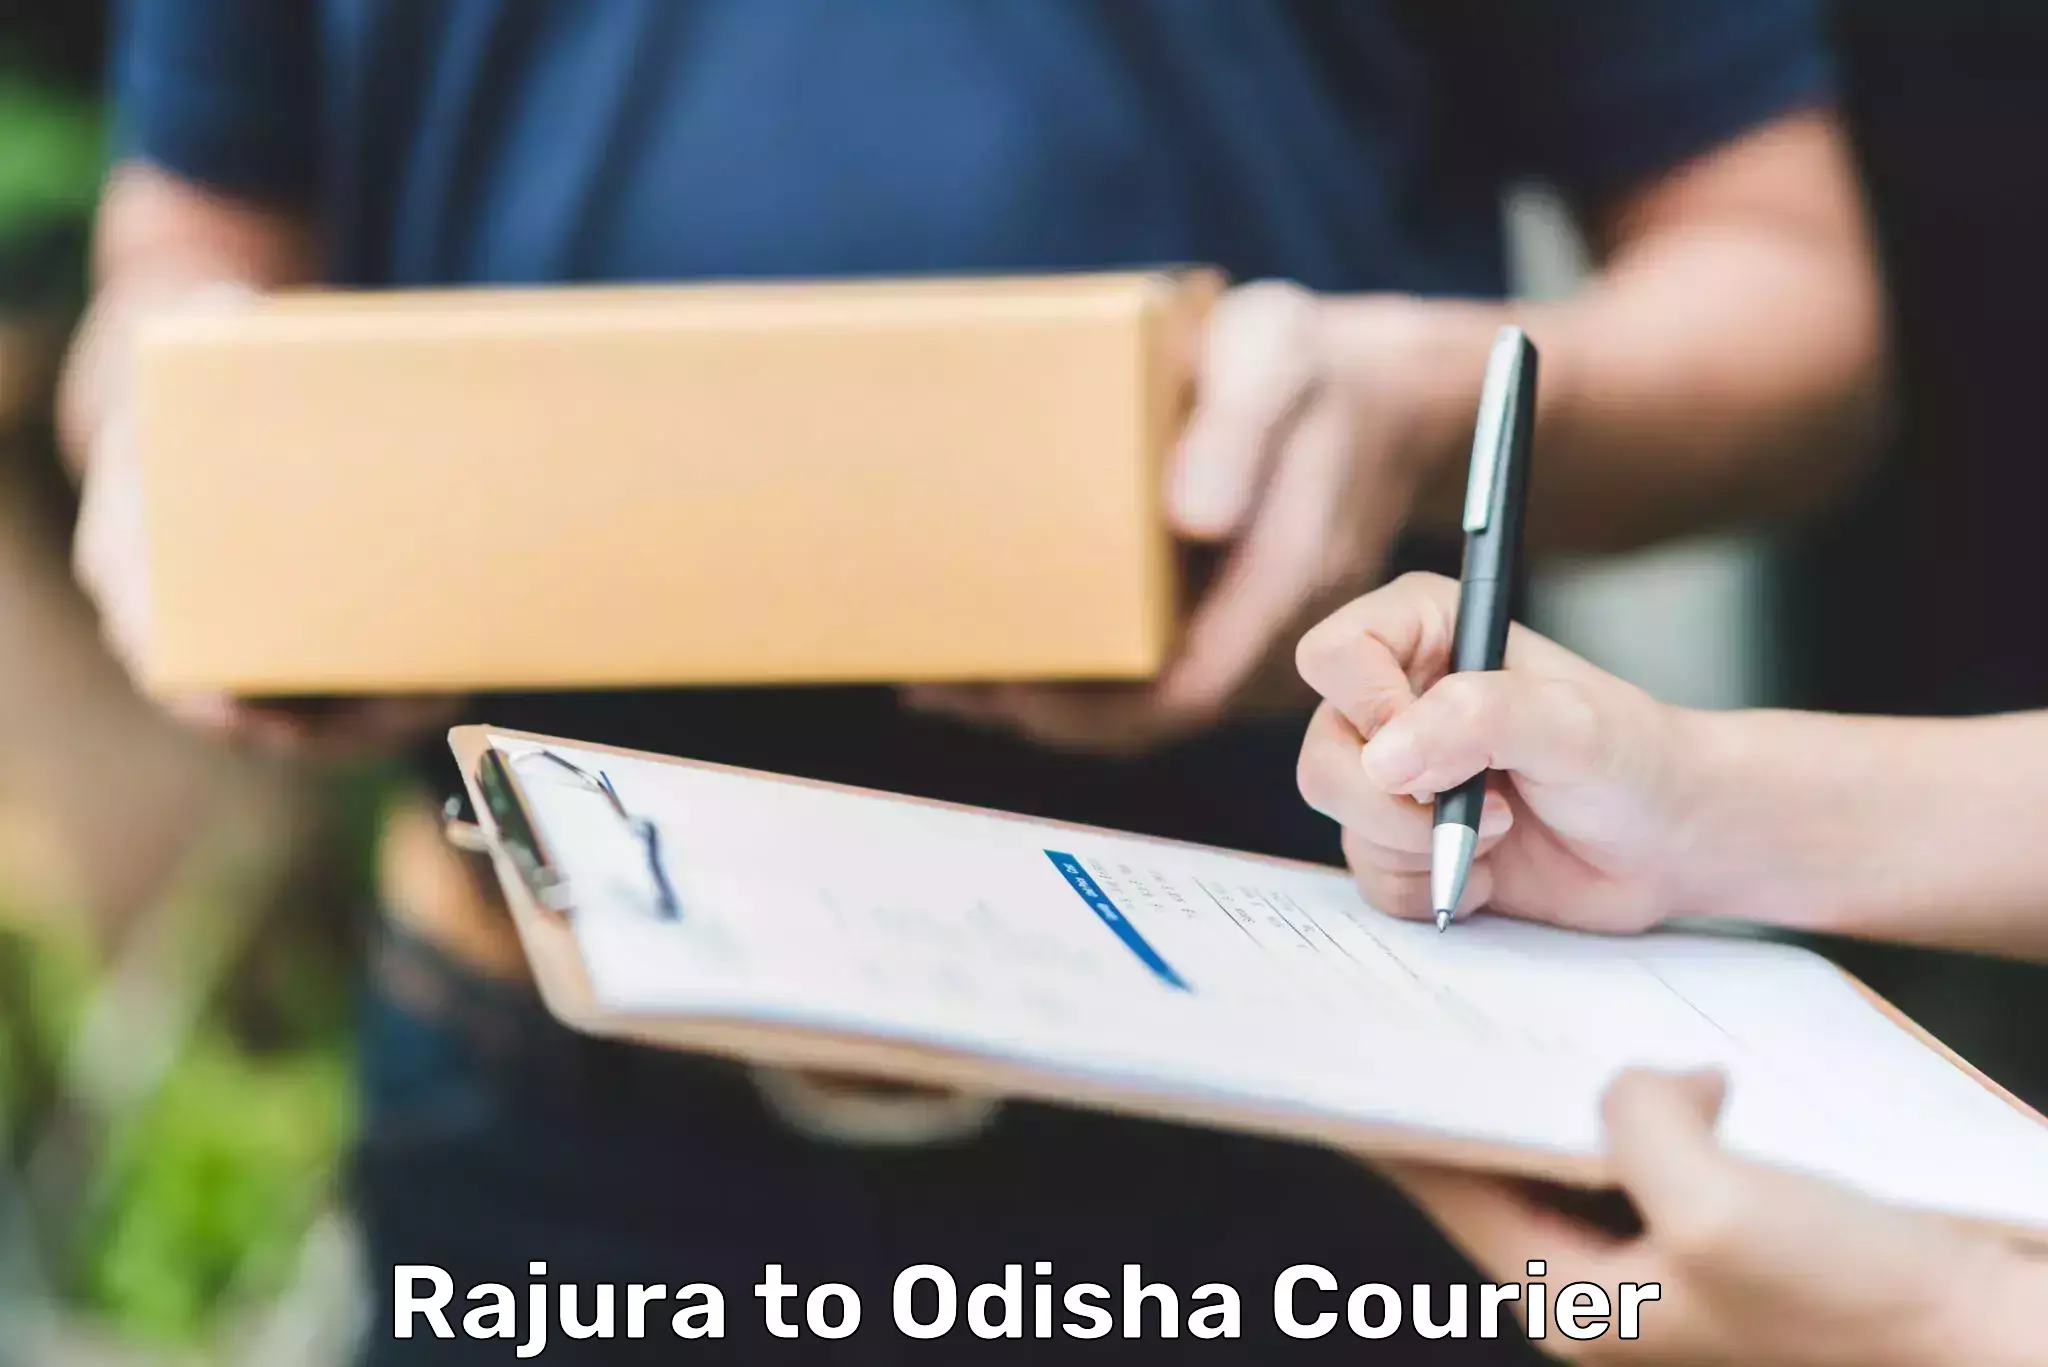 Courier service comparison Rajura to Raruan